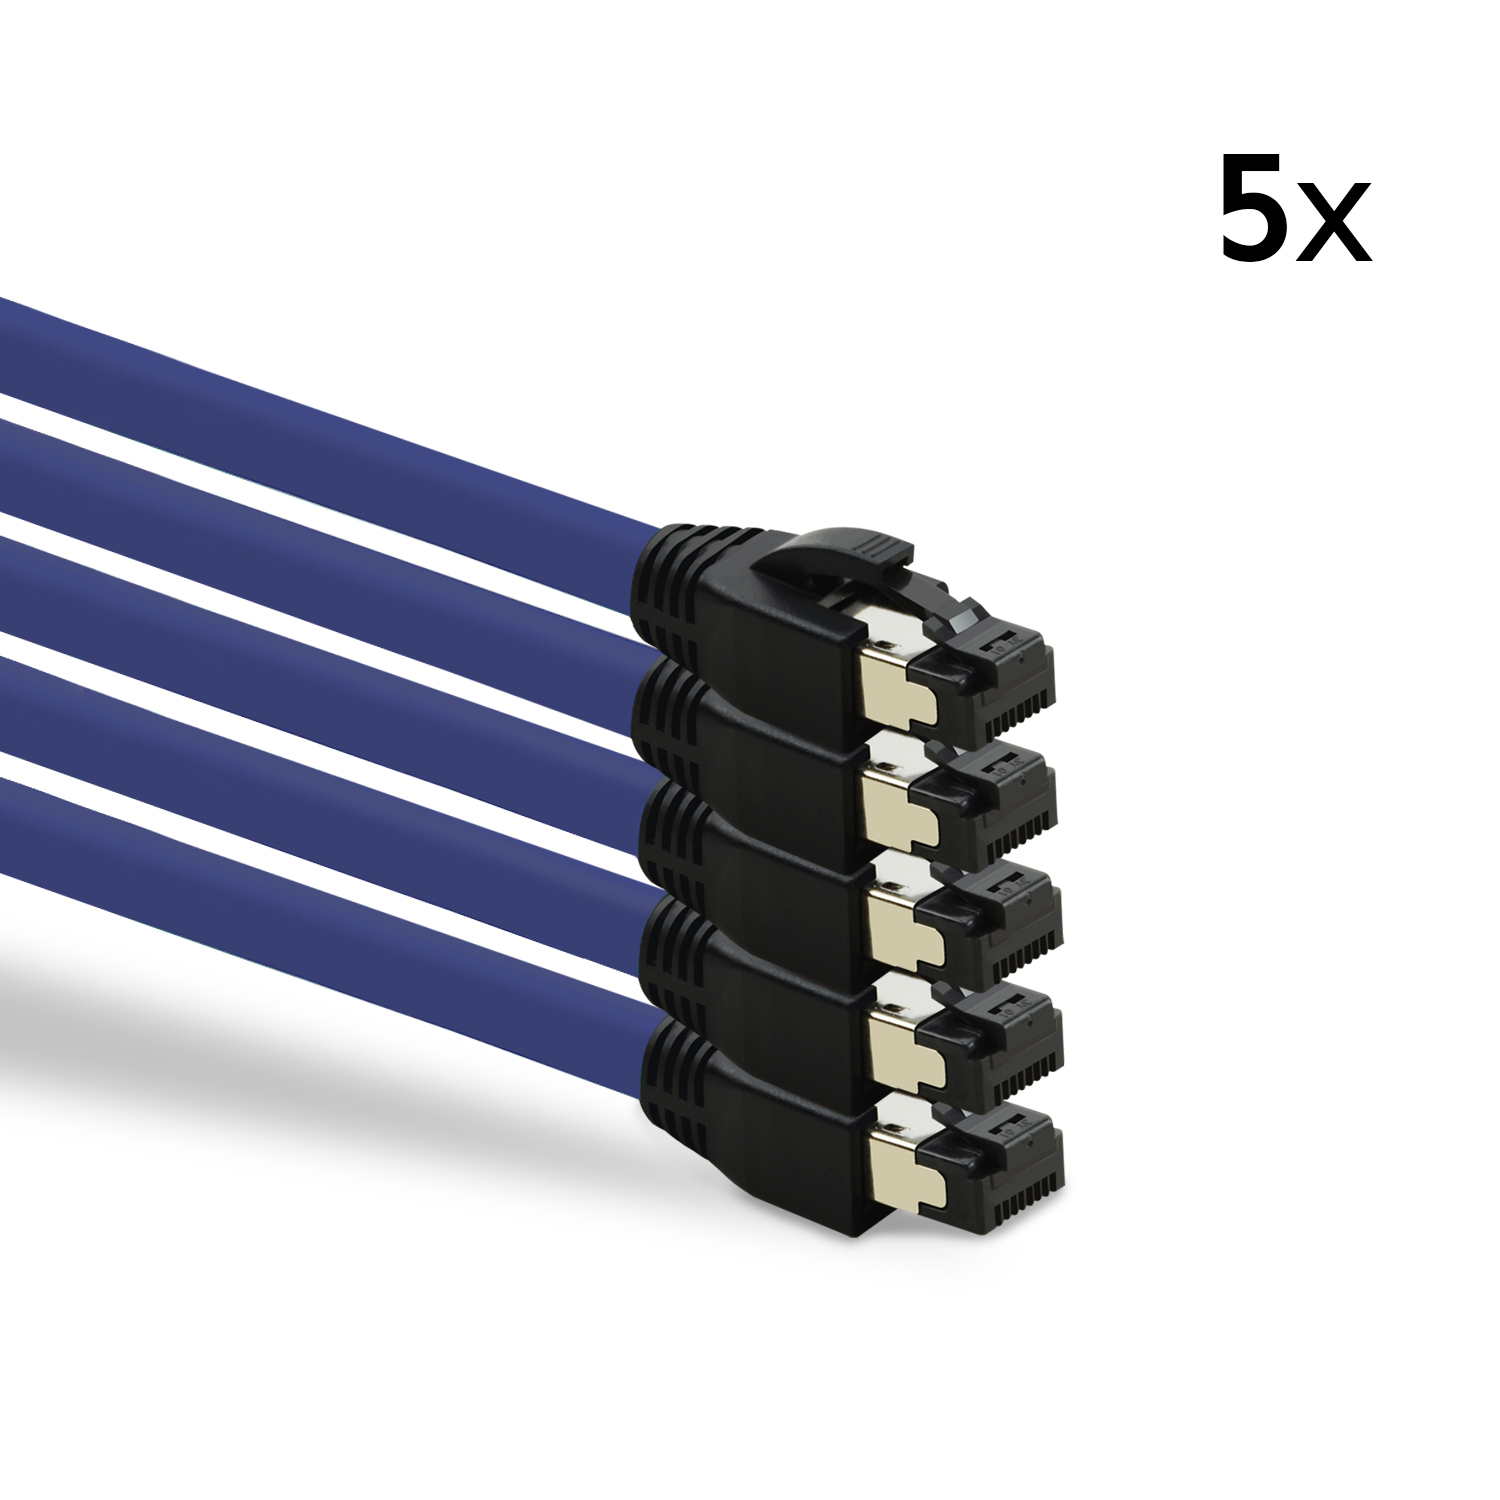 3 Patchkabel m 40 Netzwerkkabel, violett, 5er / TPFNET Pack S/FTP GBit, 3m Netzwerkkabel